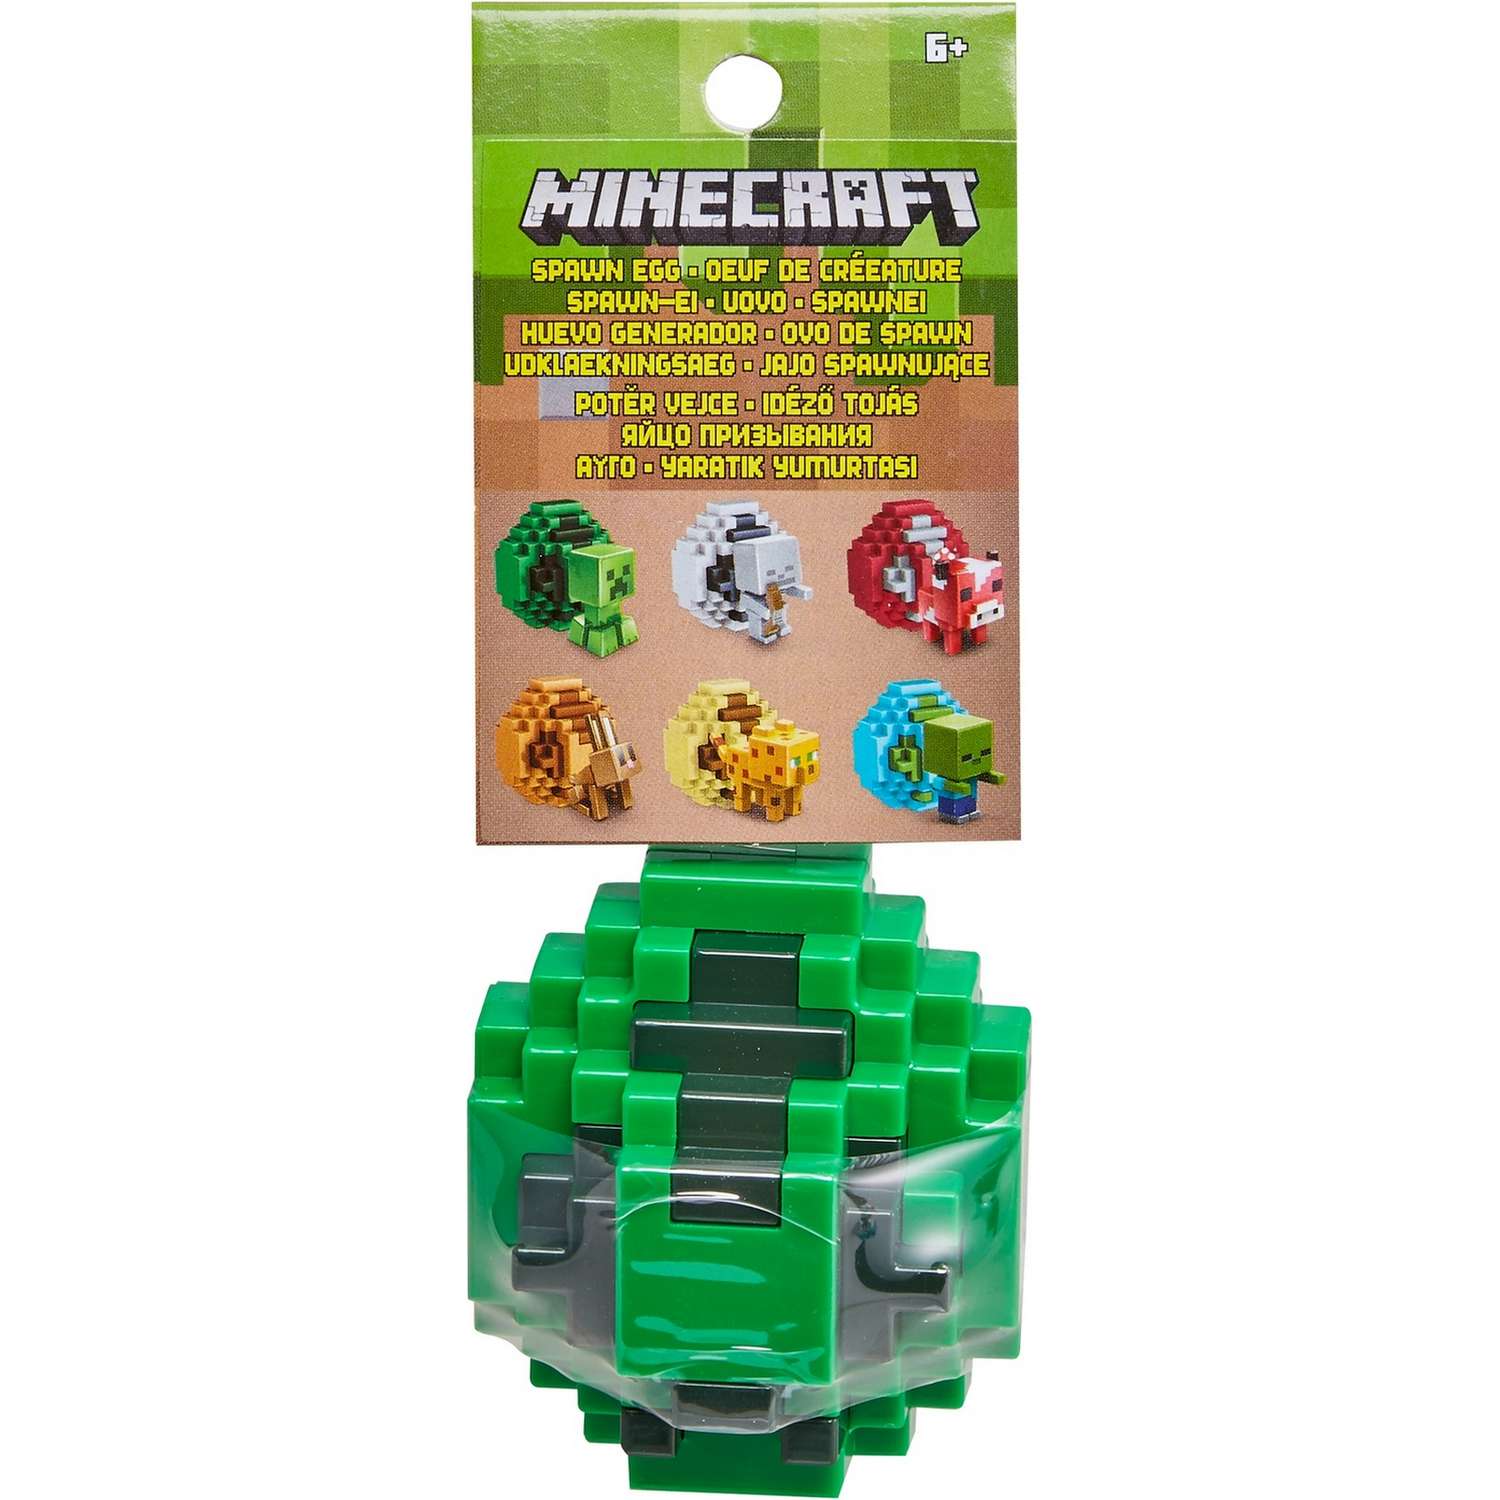 Мини-фигурка Minecraft в яйце в ассортименте - фото 8